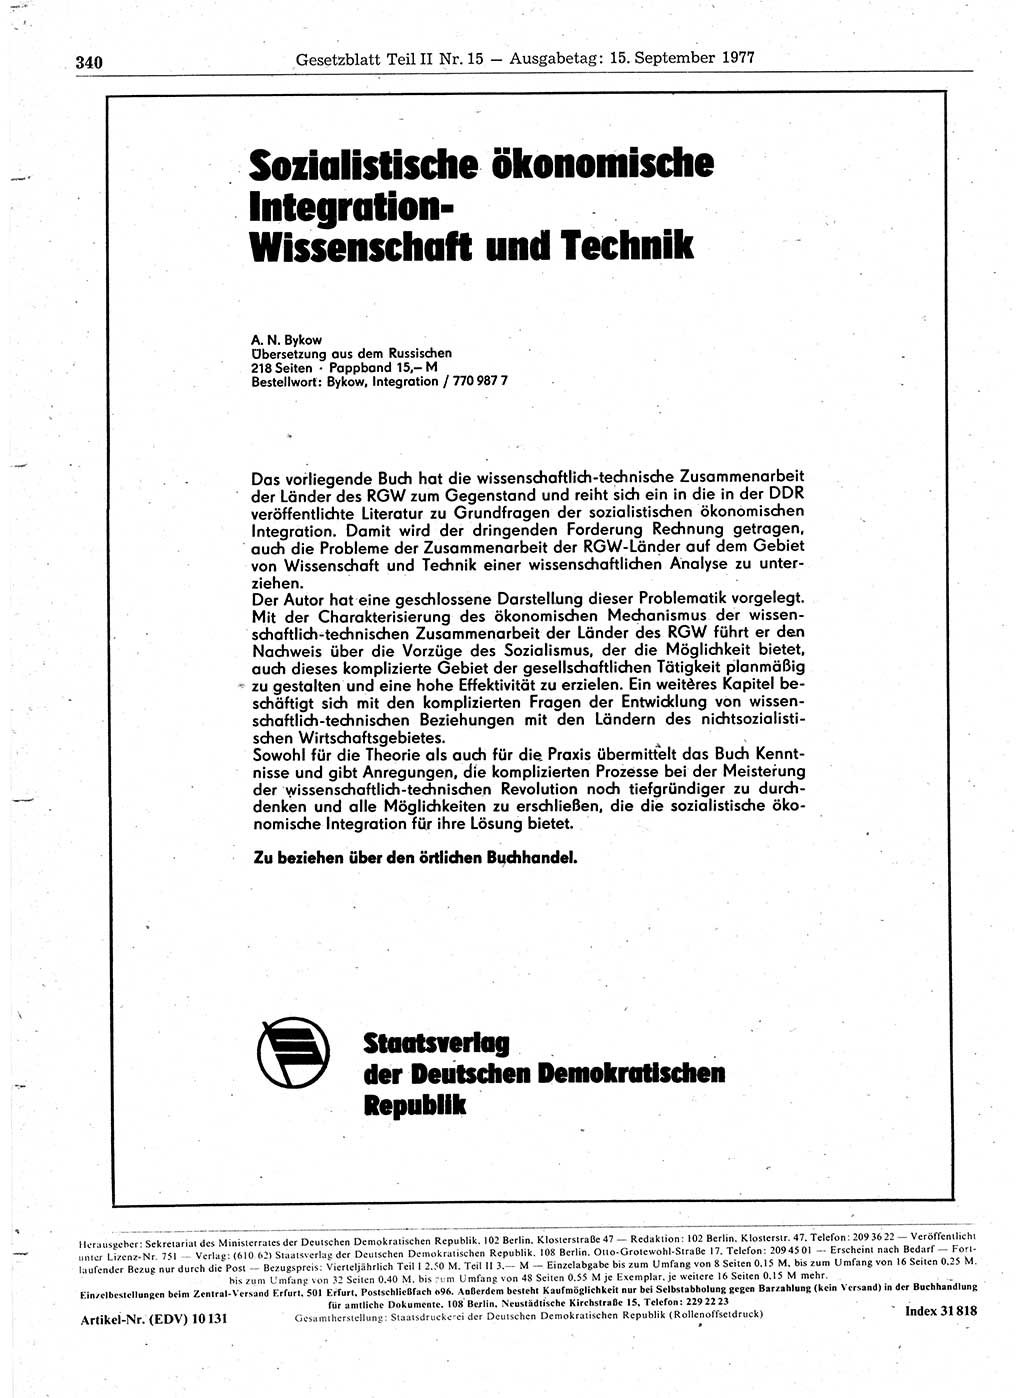 Gesetzblatt (GBl.) der Deutschen Demokratischen Republik (DDR) Teil ⅠⅠ 1977, Seite 340 (GBl. DDR ⅠⅠ 1977, S. 340)